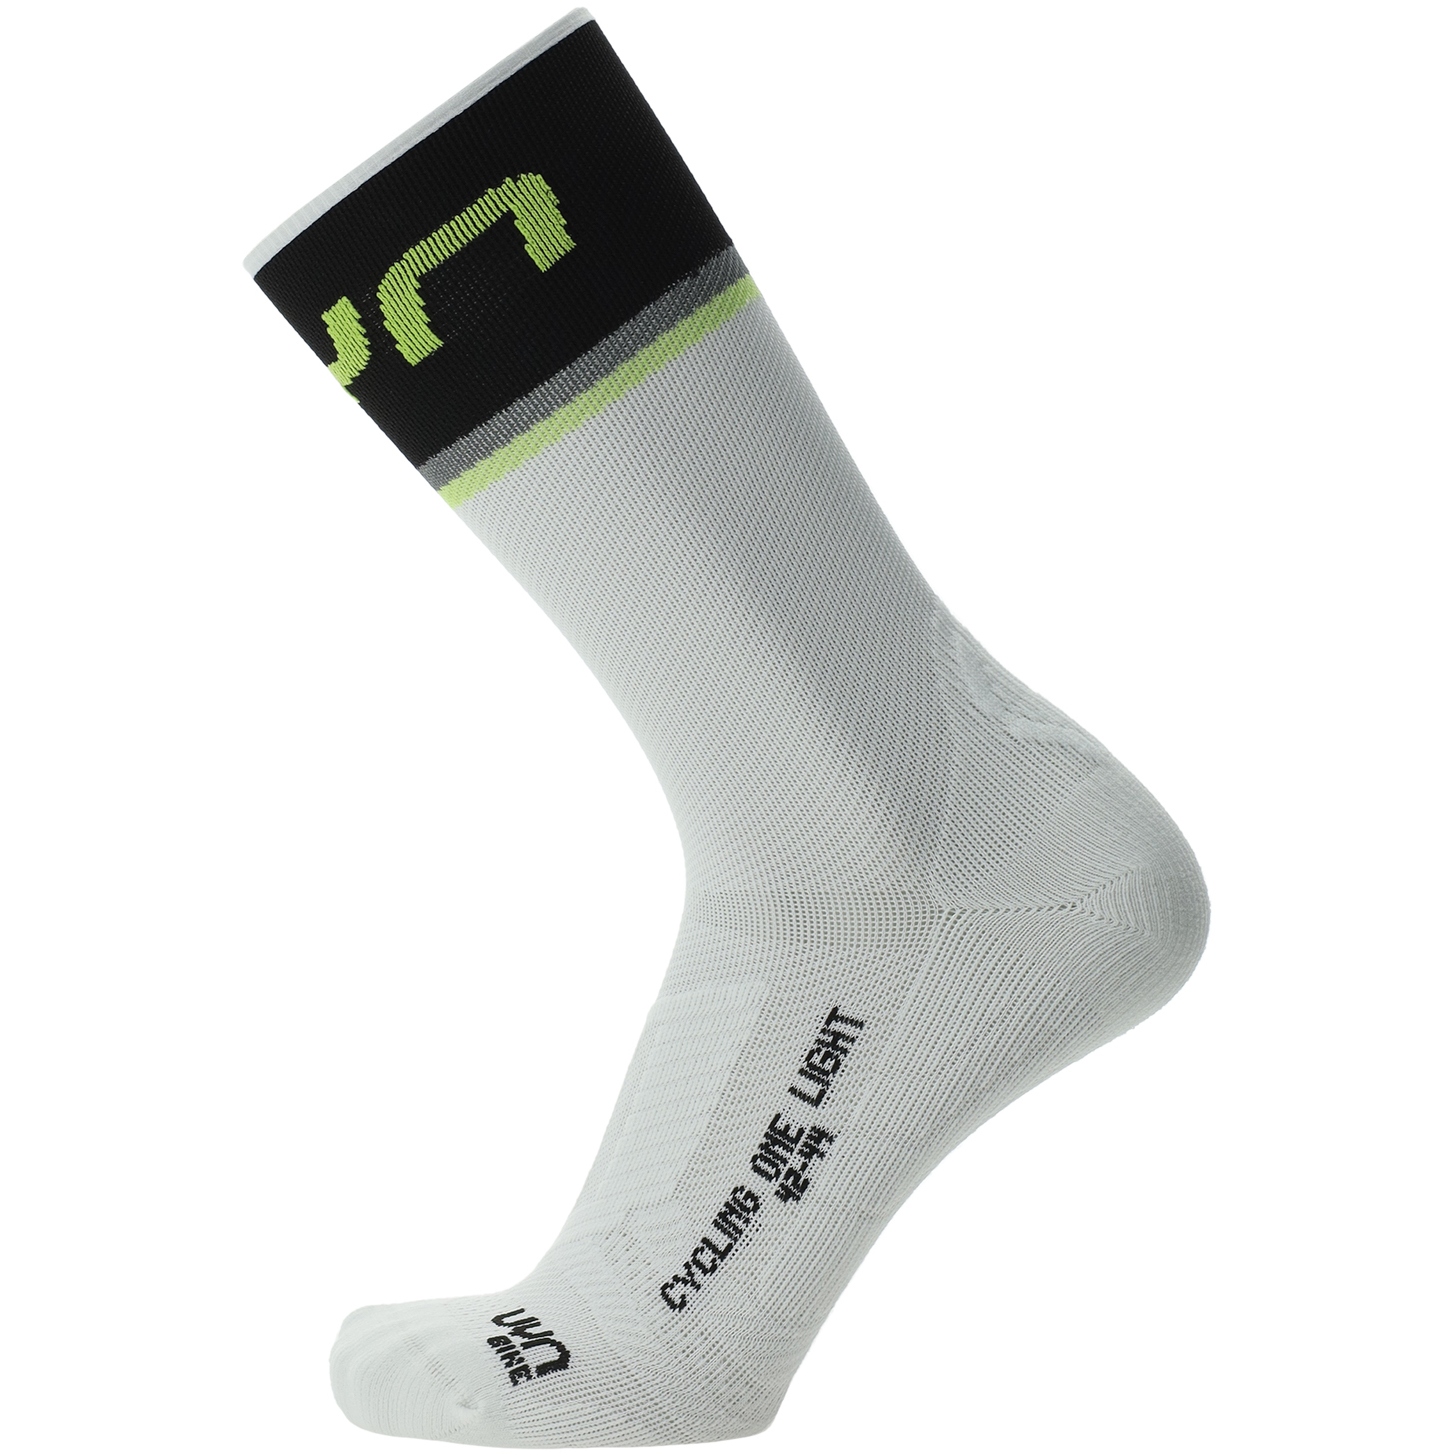 Produktbild von UYN Cycling One Light Socken Herren - Weiß/Schwarz